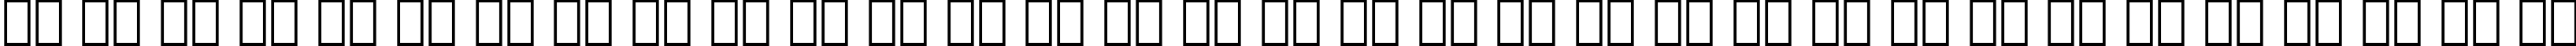 Пример написания русского алфавита шрифтом Friz Quadrata BT